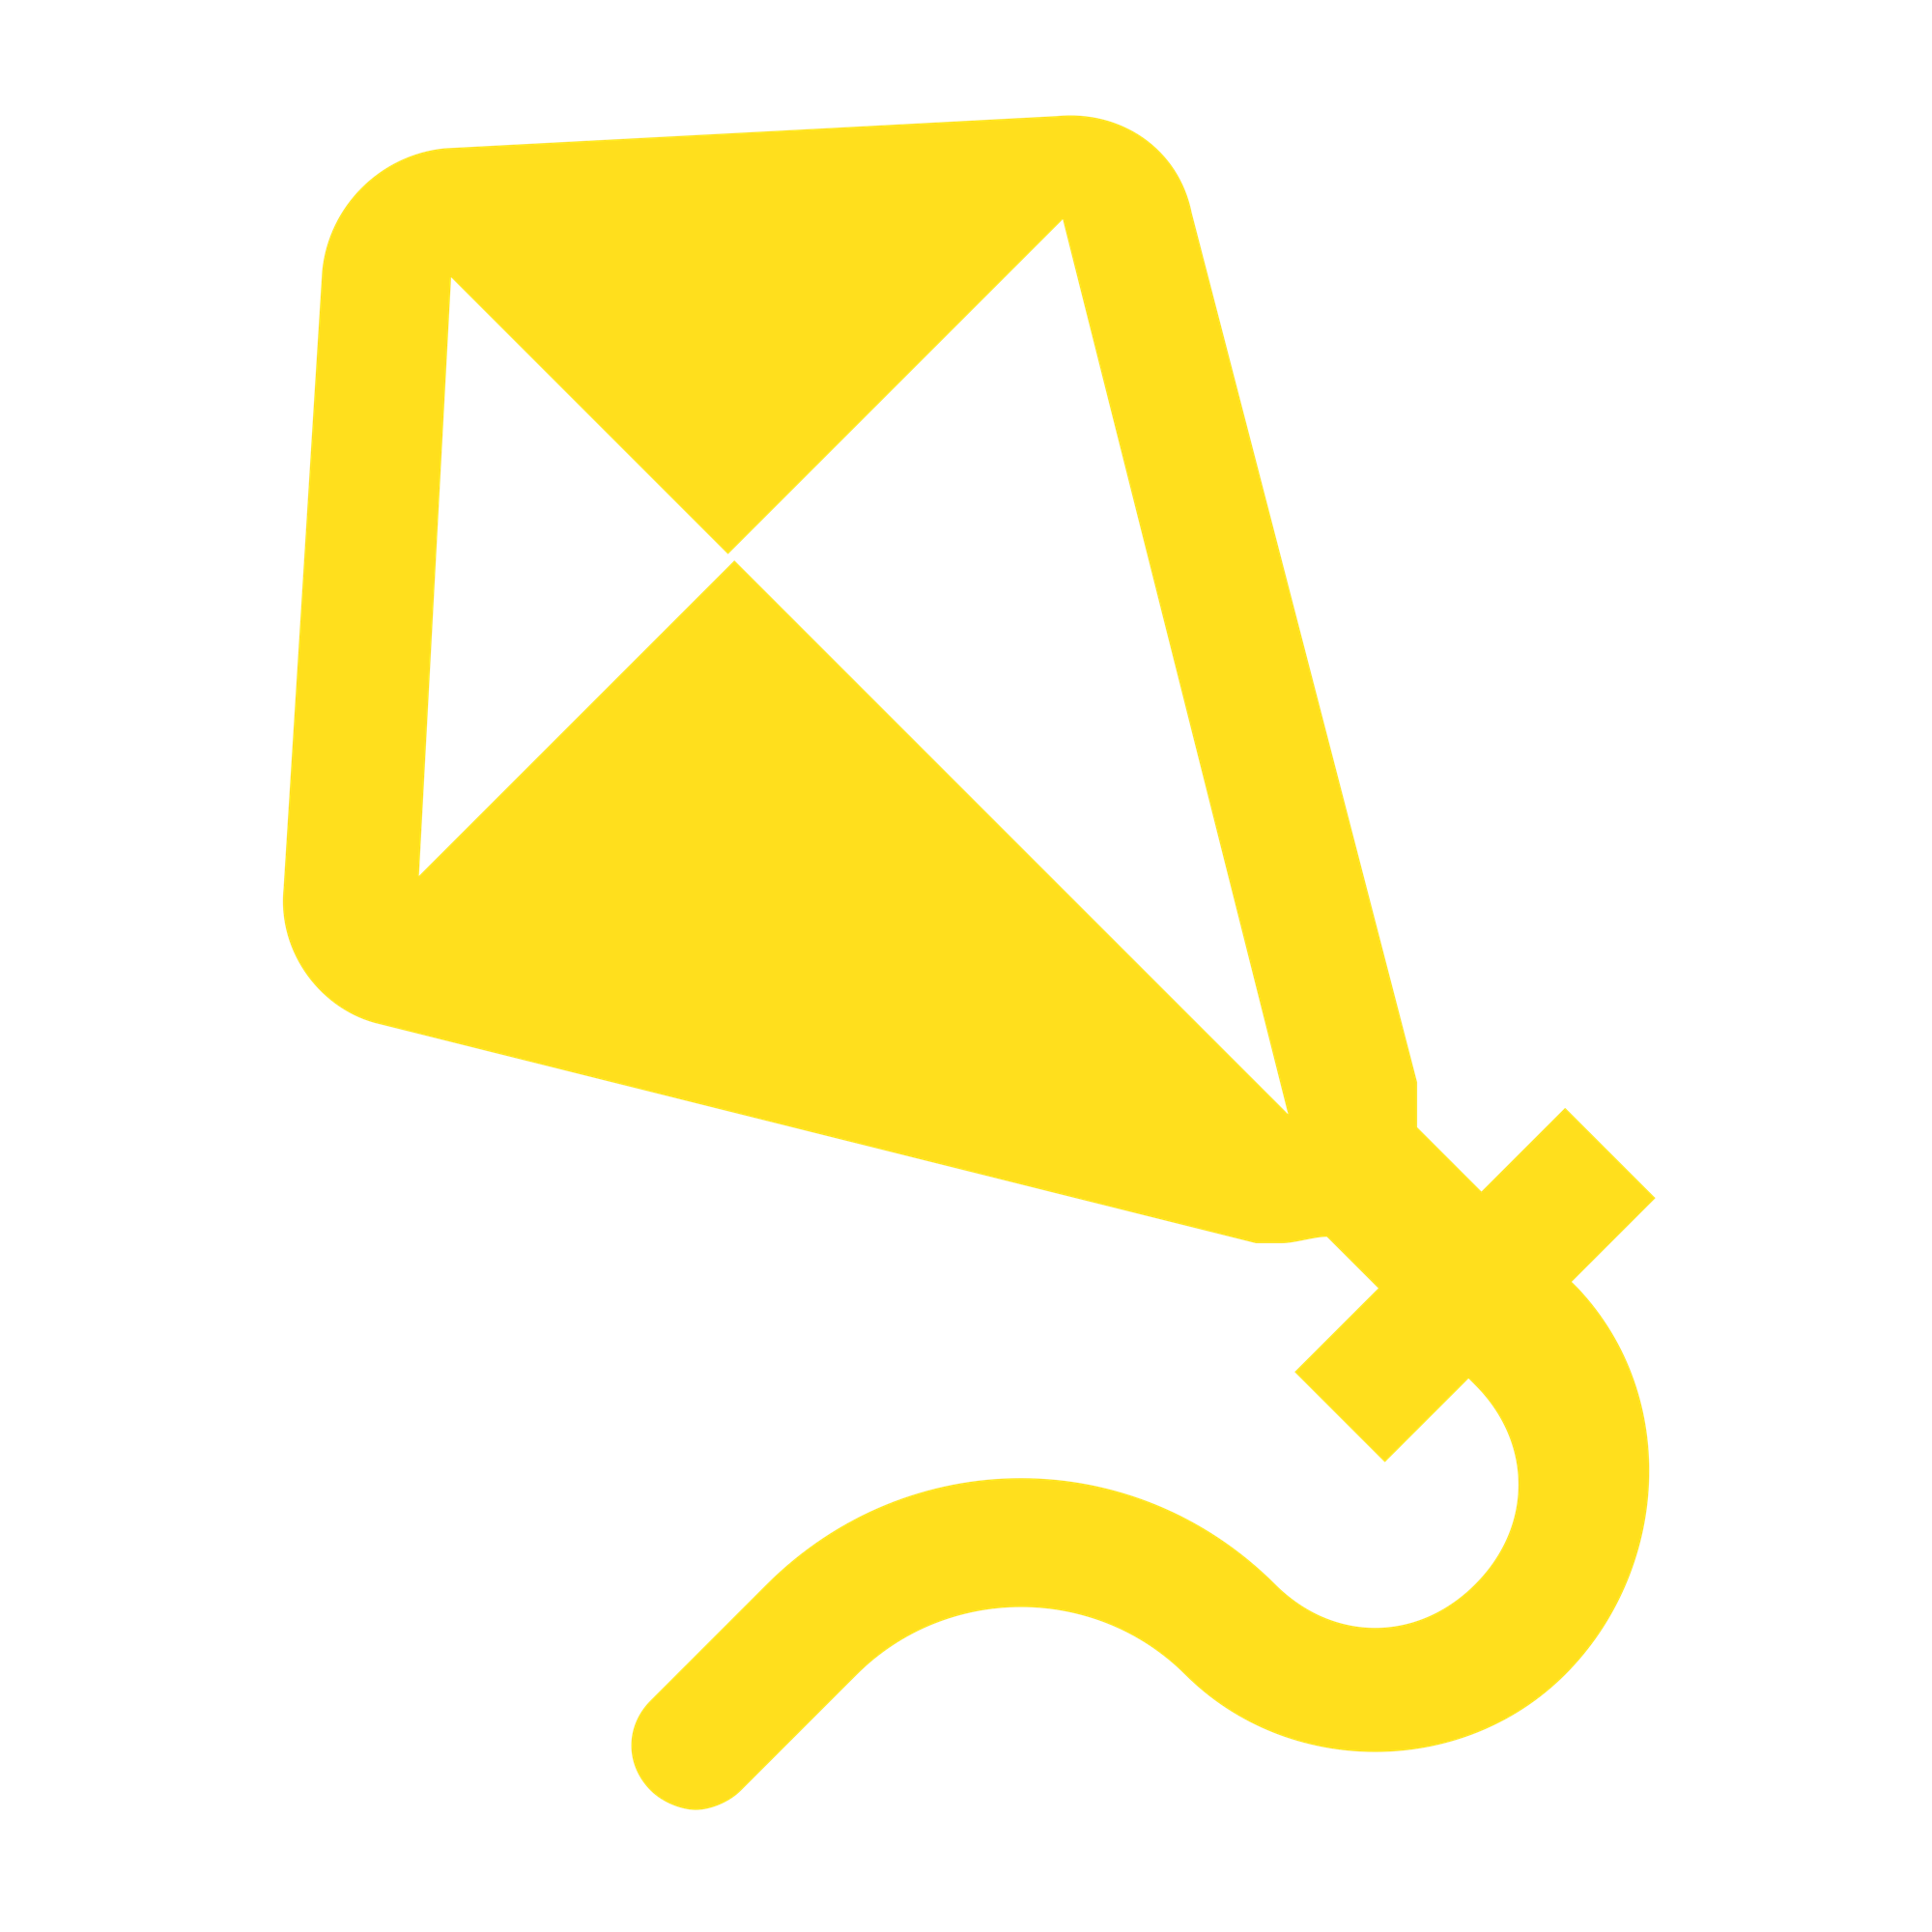 Yellow kite icon